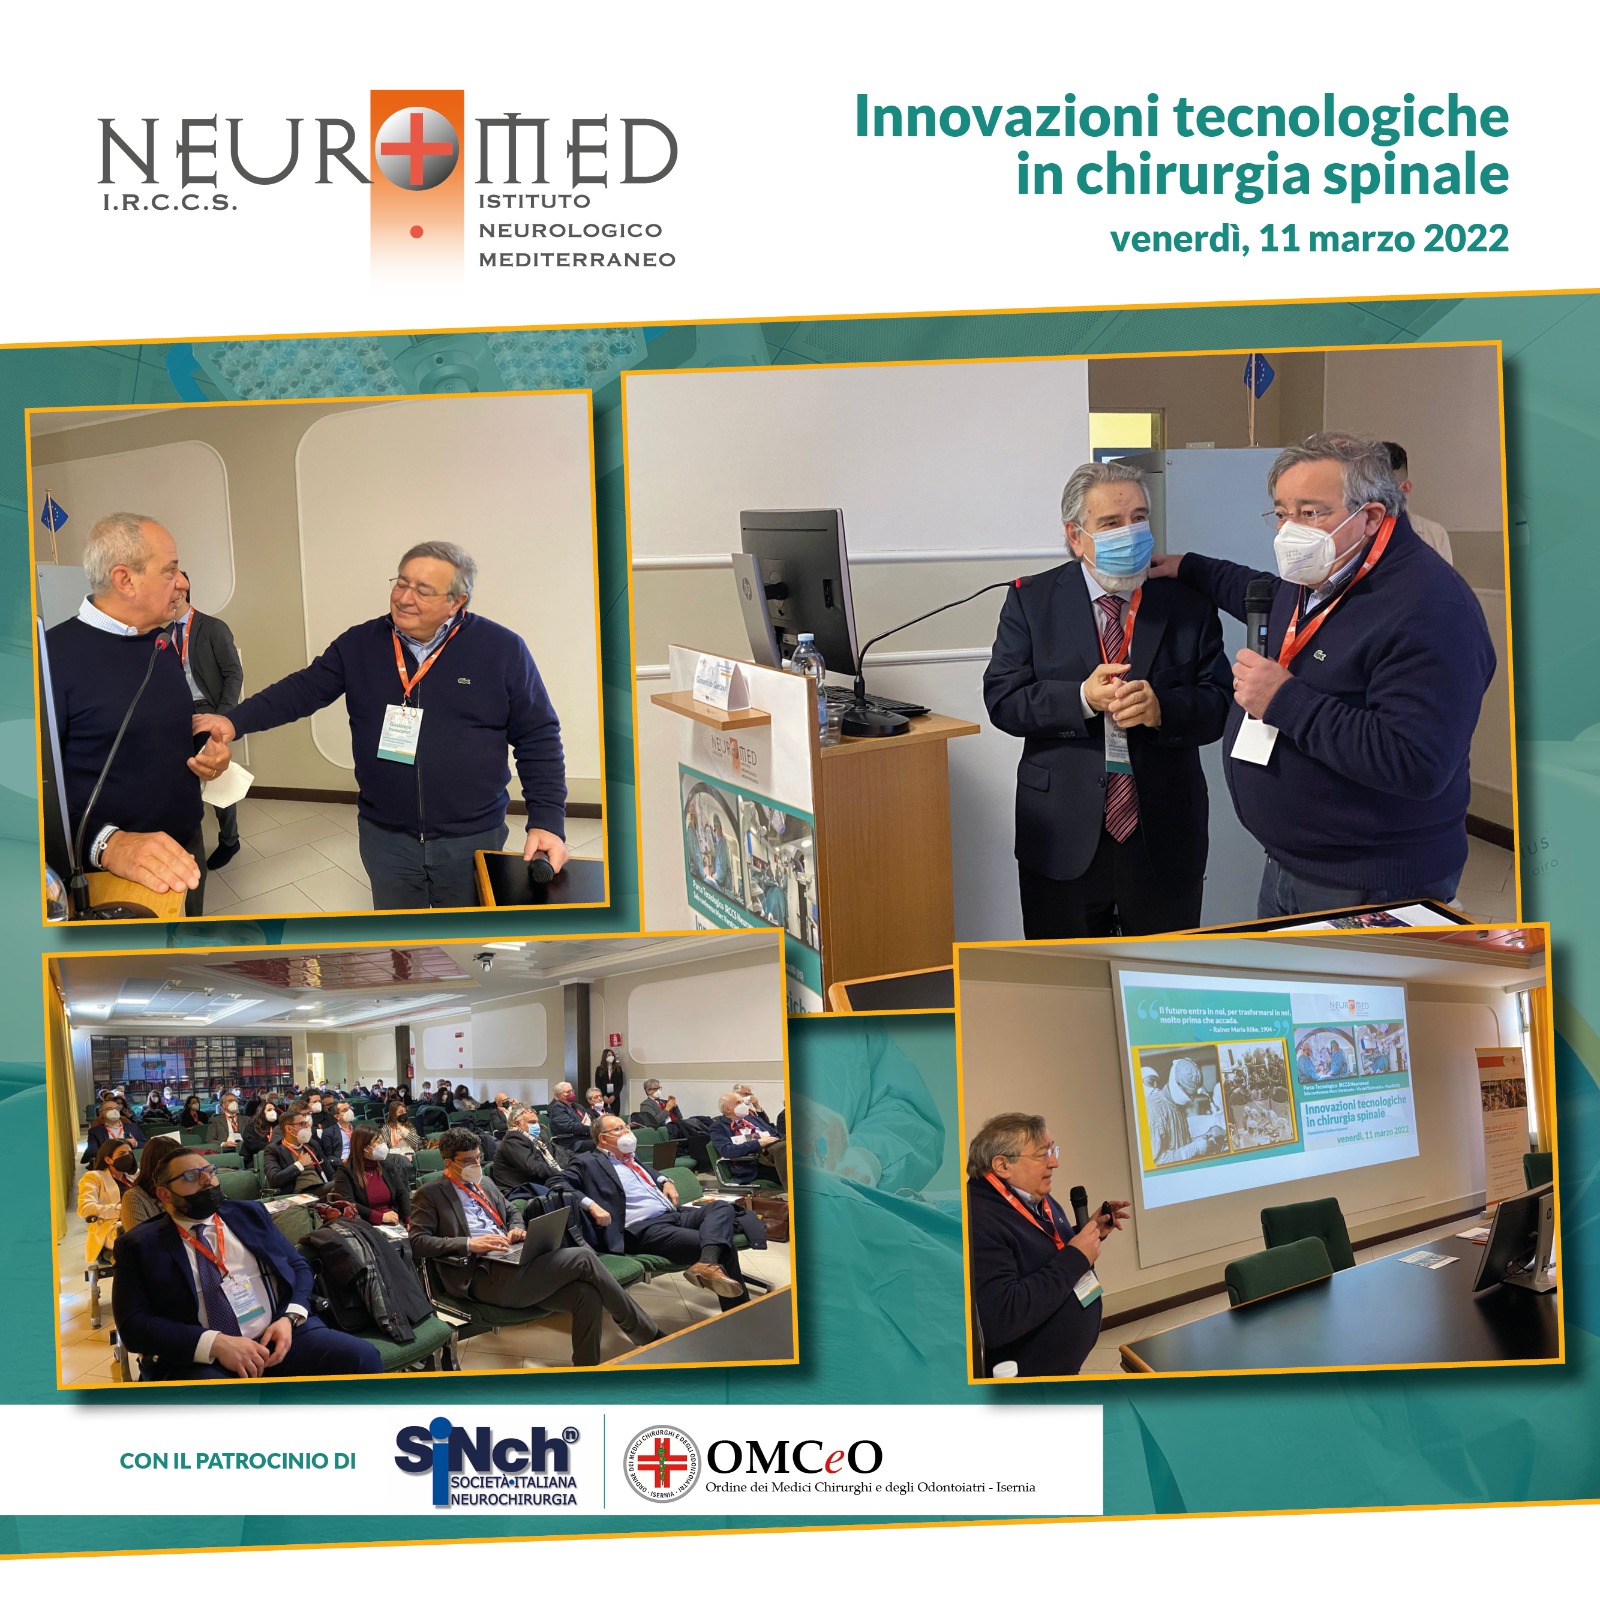 Pozzilli: I.R.C.C.S Neuromed, convergenza nuove tecnologie nella chirurgia spinale, accorsato meeting per interventi su colonna vertebrale